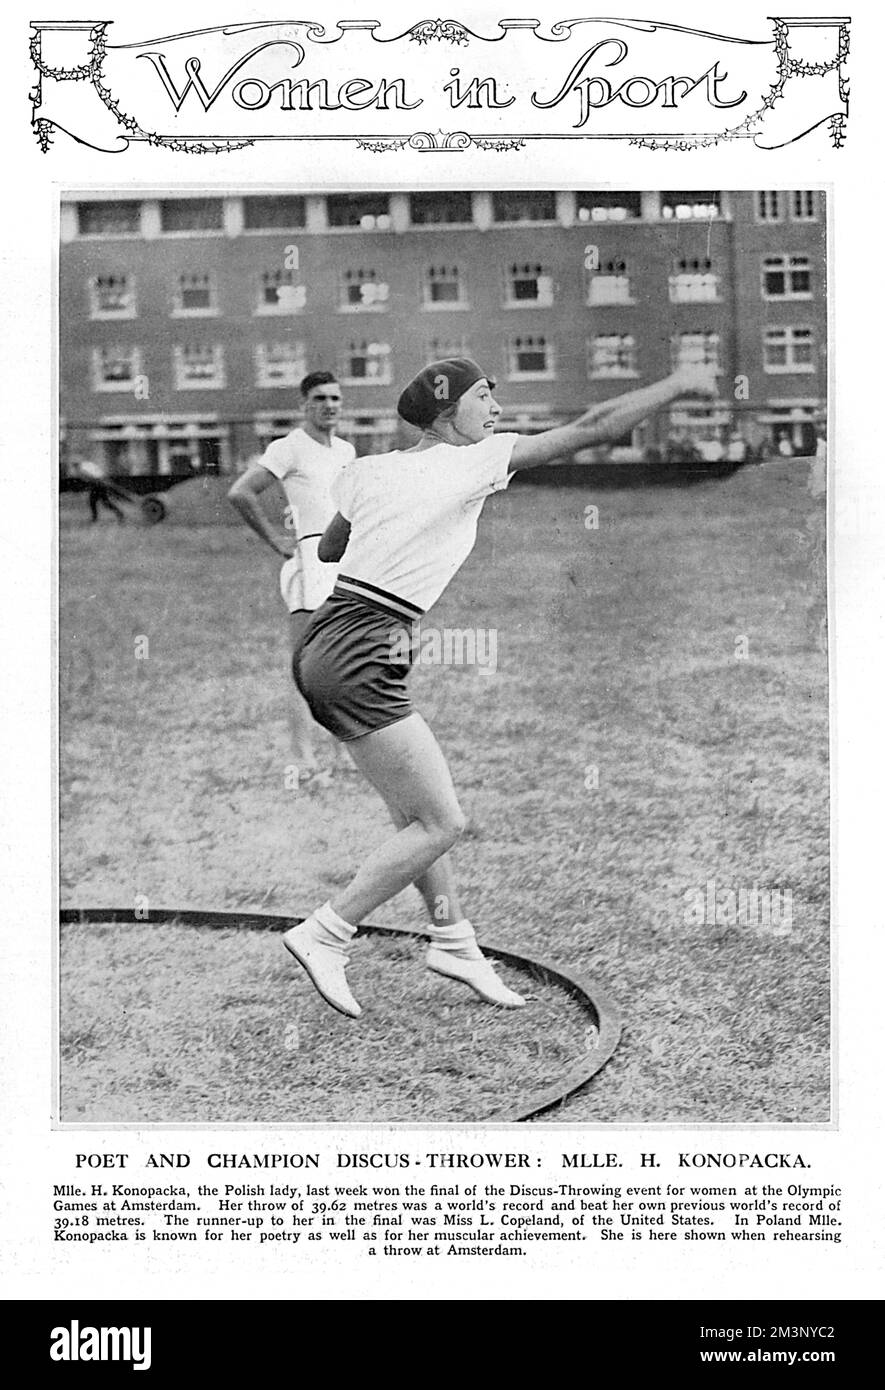 Halina Konopacka (1900 - 1989), berühmte Athlet und erste polnische Olympiameisterin (1928, Amsterdam). Sie nahm an den Olympischen Spielen in Amsterdam Teil, wo sie eine Goldmedaille im Diskuswurf gewann und ihren eigenen Weltrekord brach. Das war das erste Leichtathletikevent der Frauen, das Gold gewann. Sie war in Polen auch für ihre Poesie bekannt, laut der Bildunterschrift. Was für ein Mädchen. Datum: 1928 Stockfoto